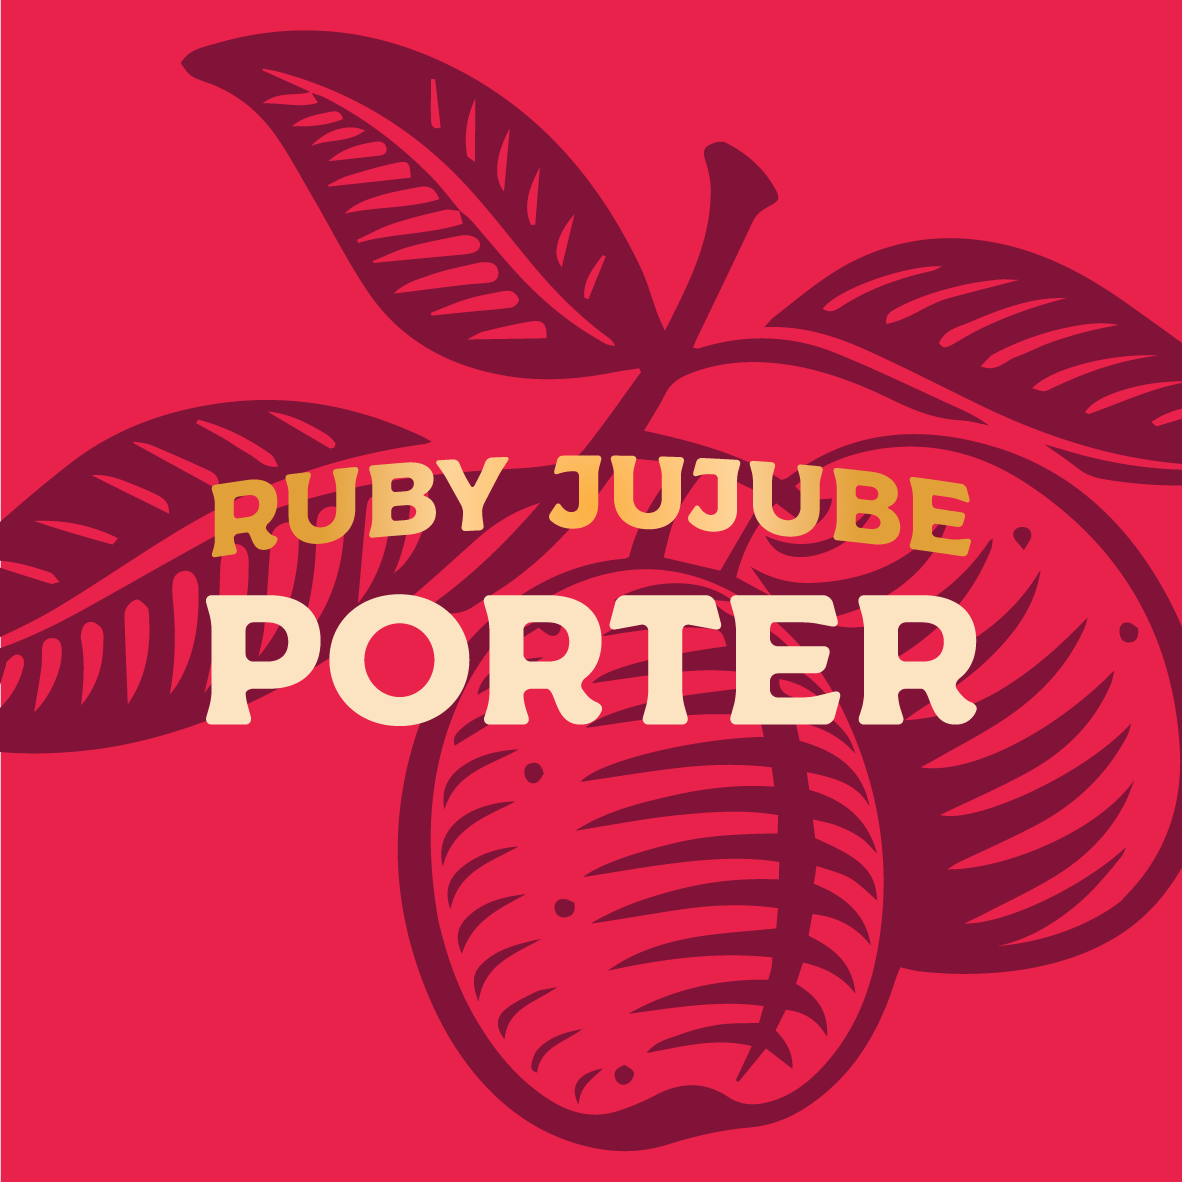 RUBY JUBUBE PORTER